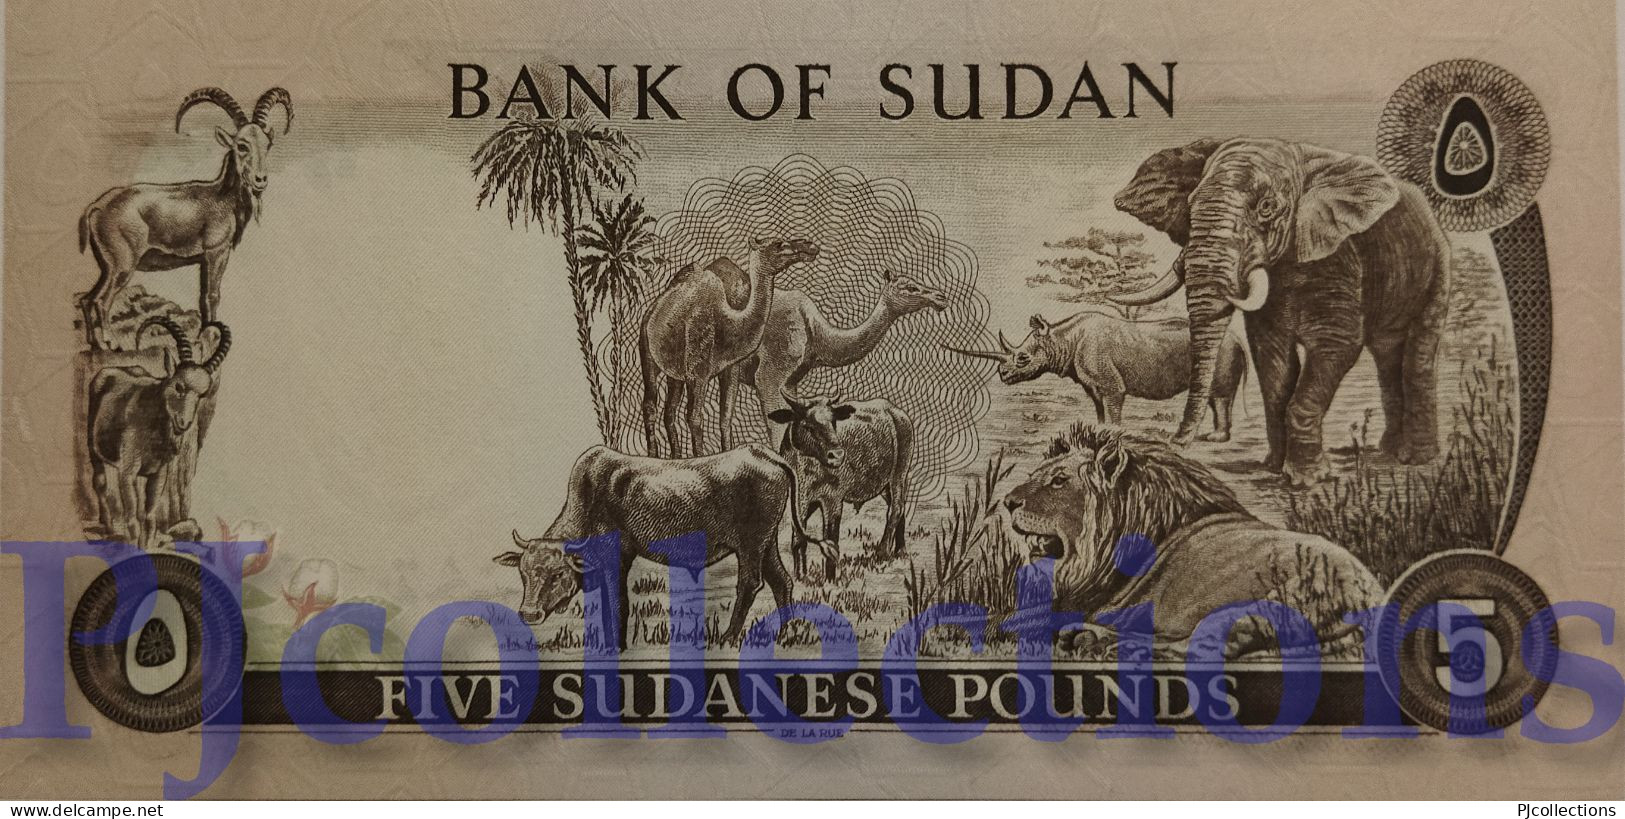 SUDAN 5 POUNDS 1980 PICK 14c UNC RARE - Sudan